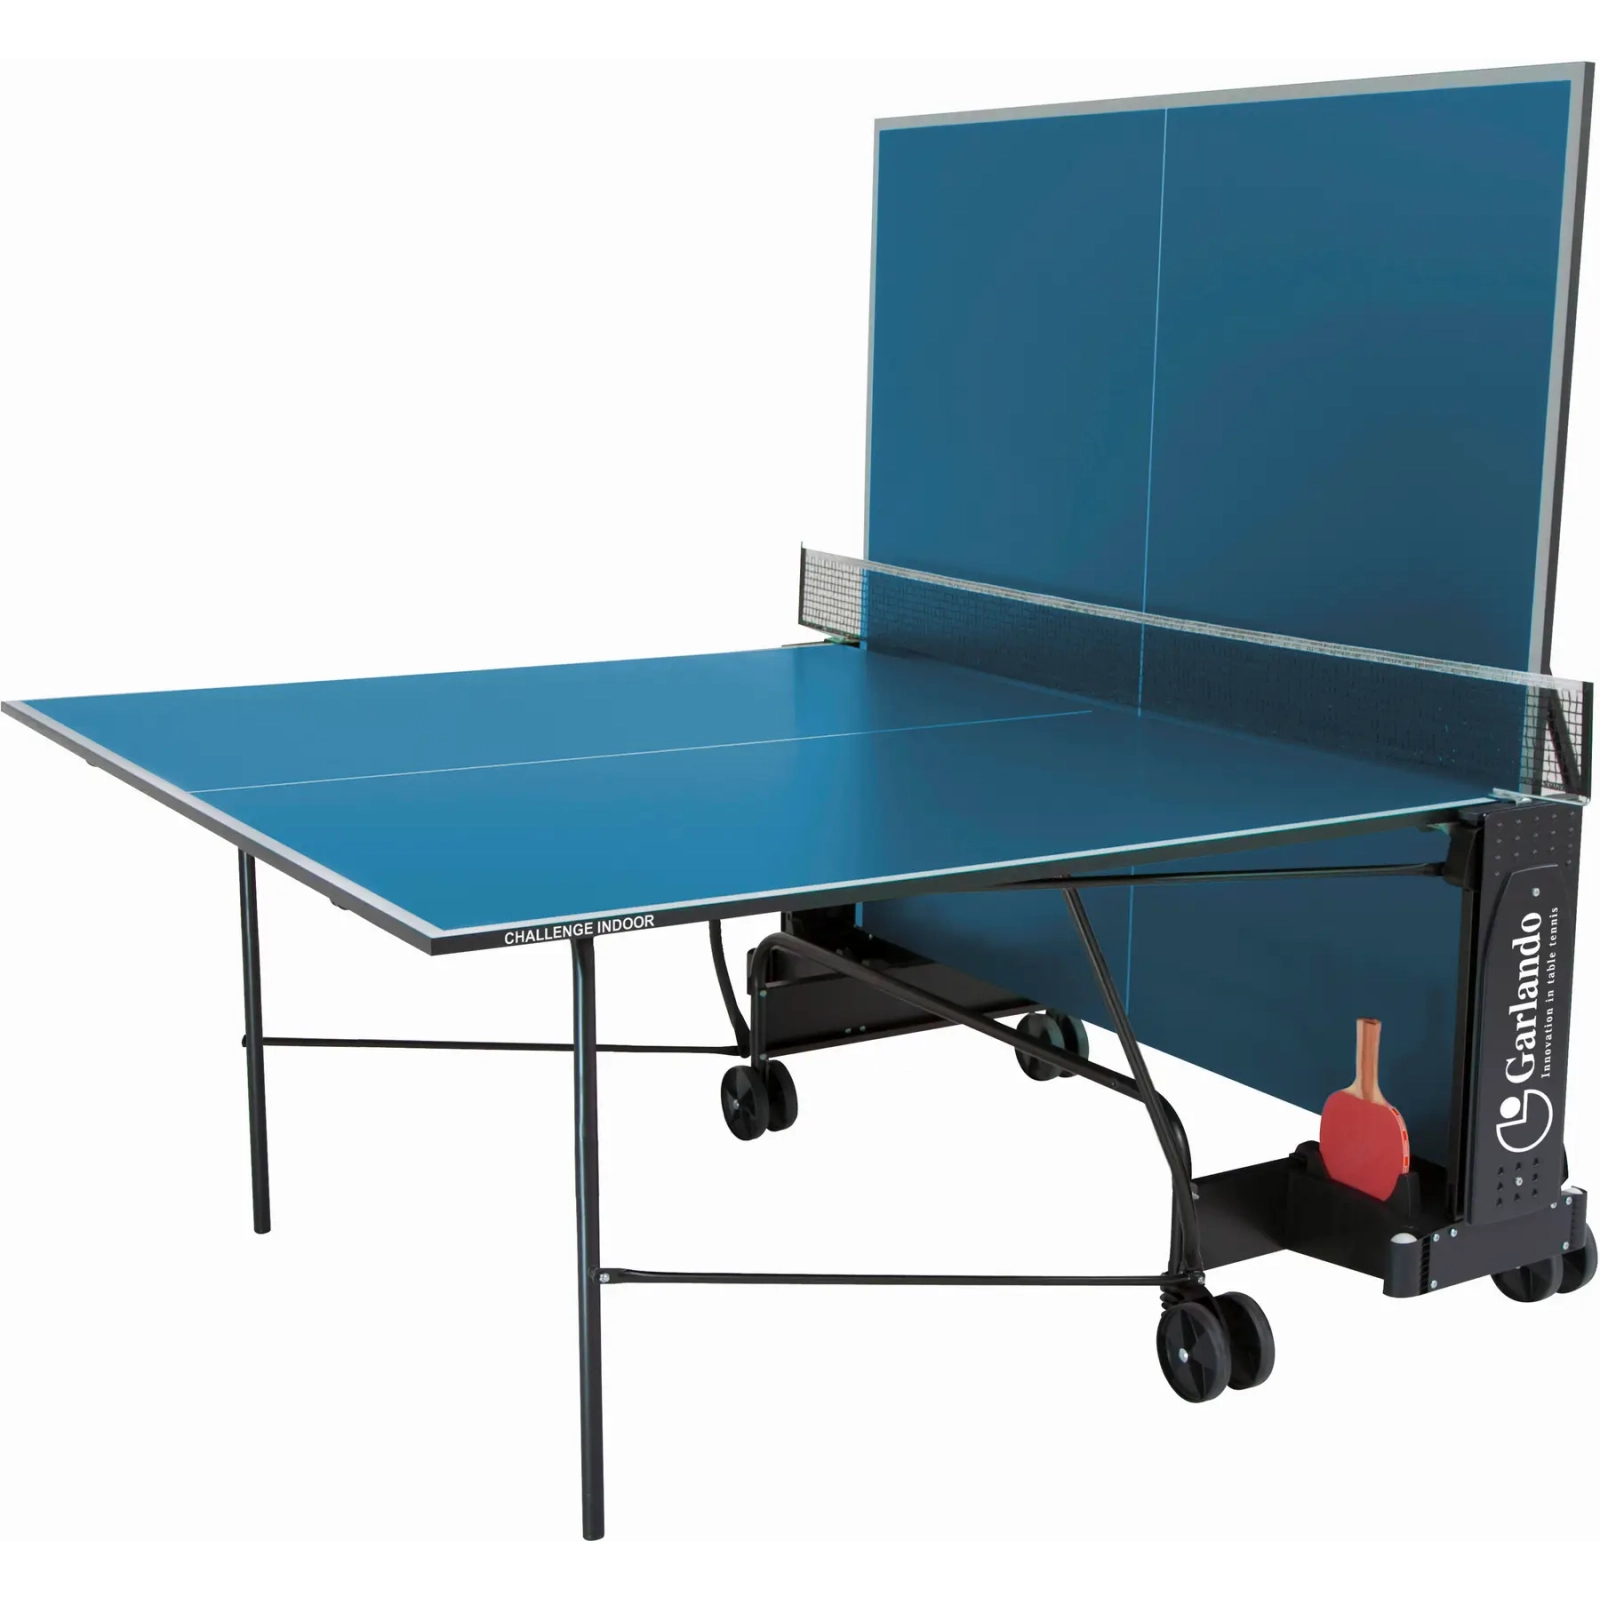 Теннисный стол Garlando Challenge Indoor 16 mm Blue (C-273I) (930620) изображение 2